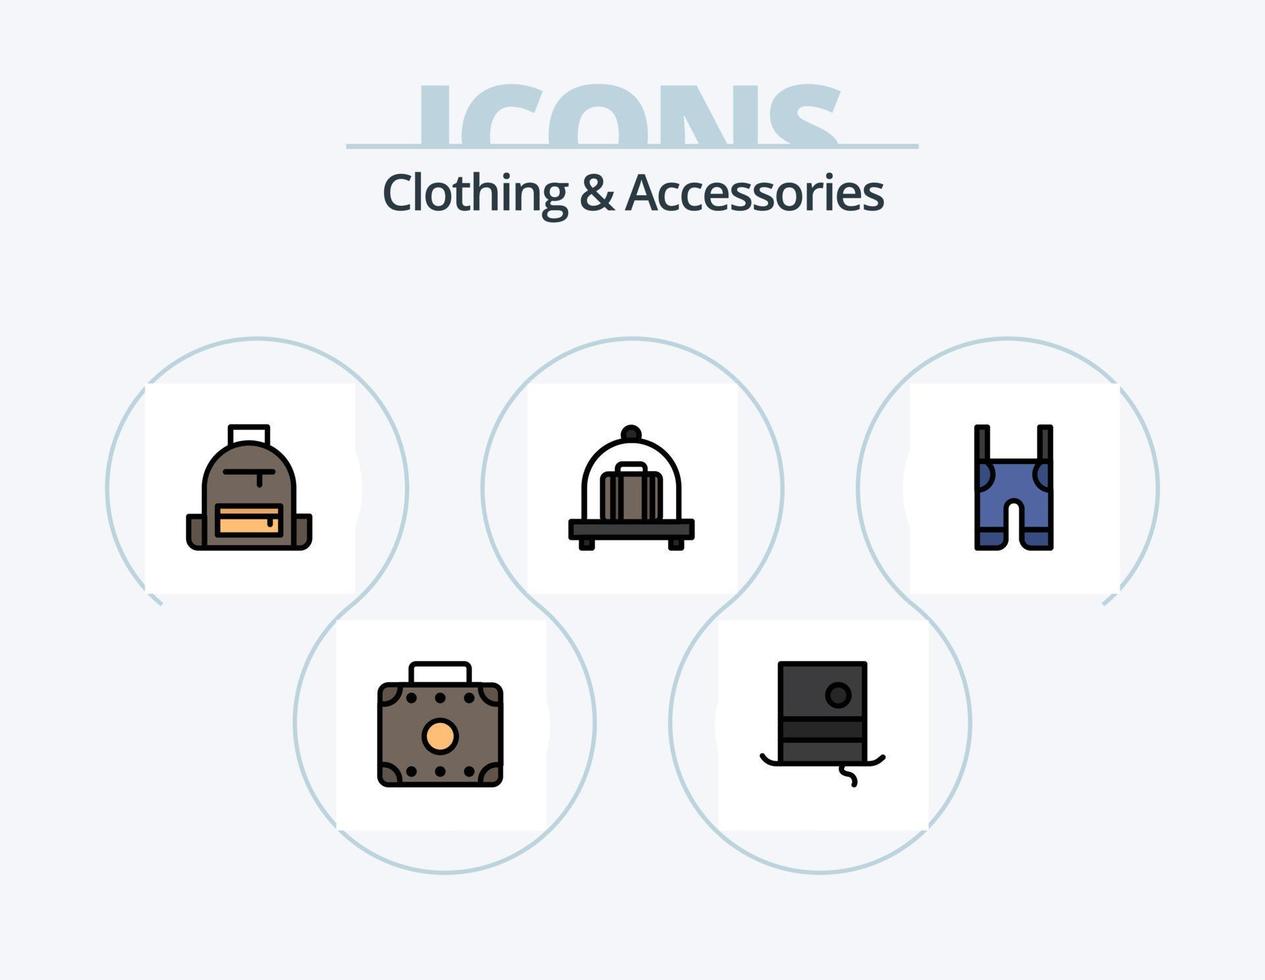 línea de ropa y accesorios llenos de icono paquete 5 diseño de iconos. correas ropa. aletas tirantes. ropa vector